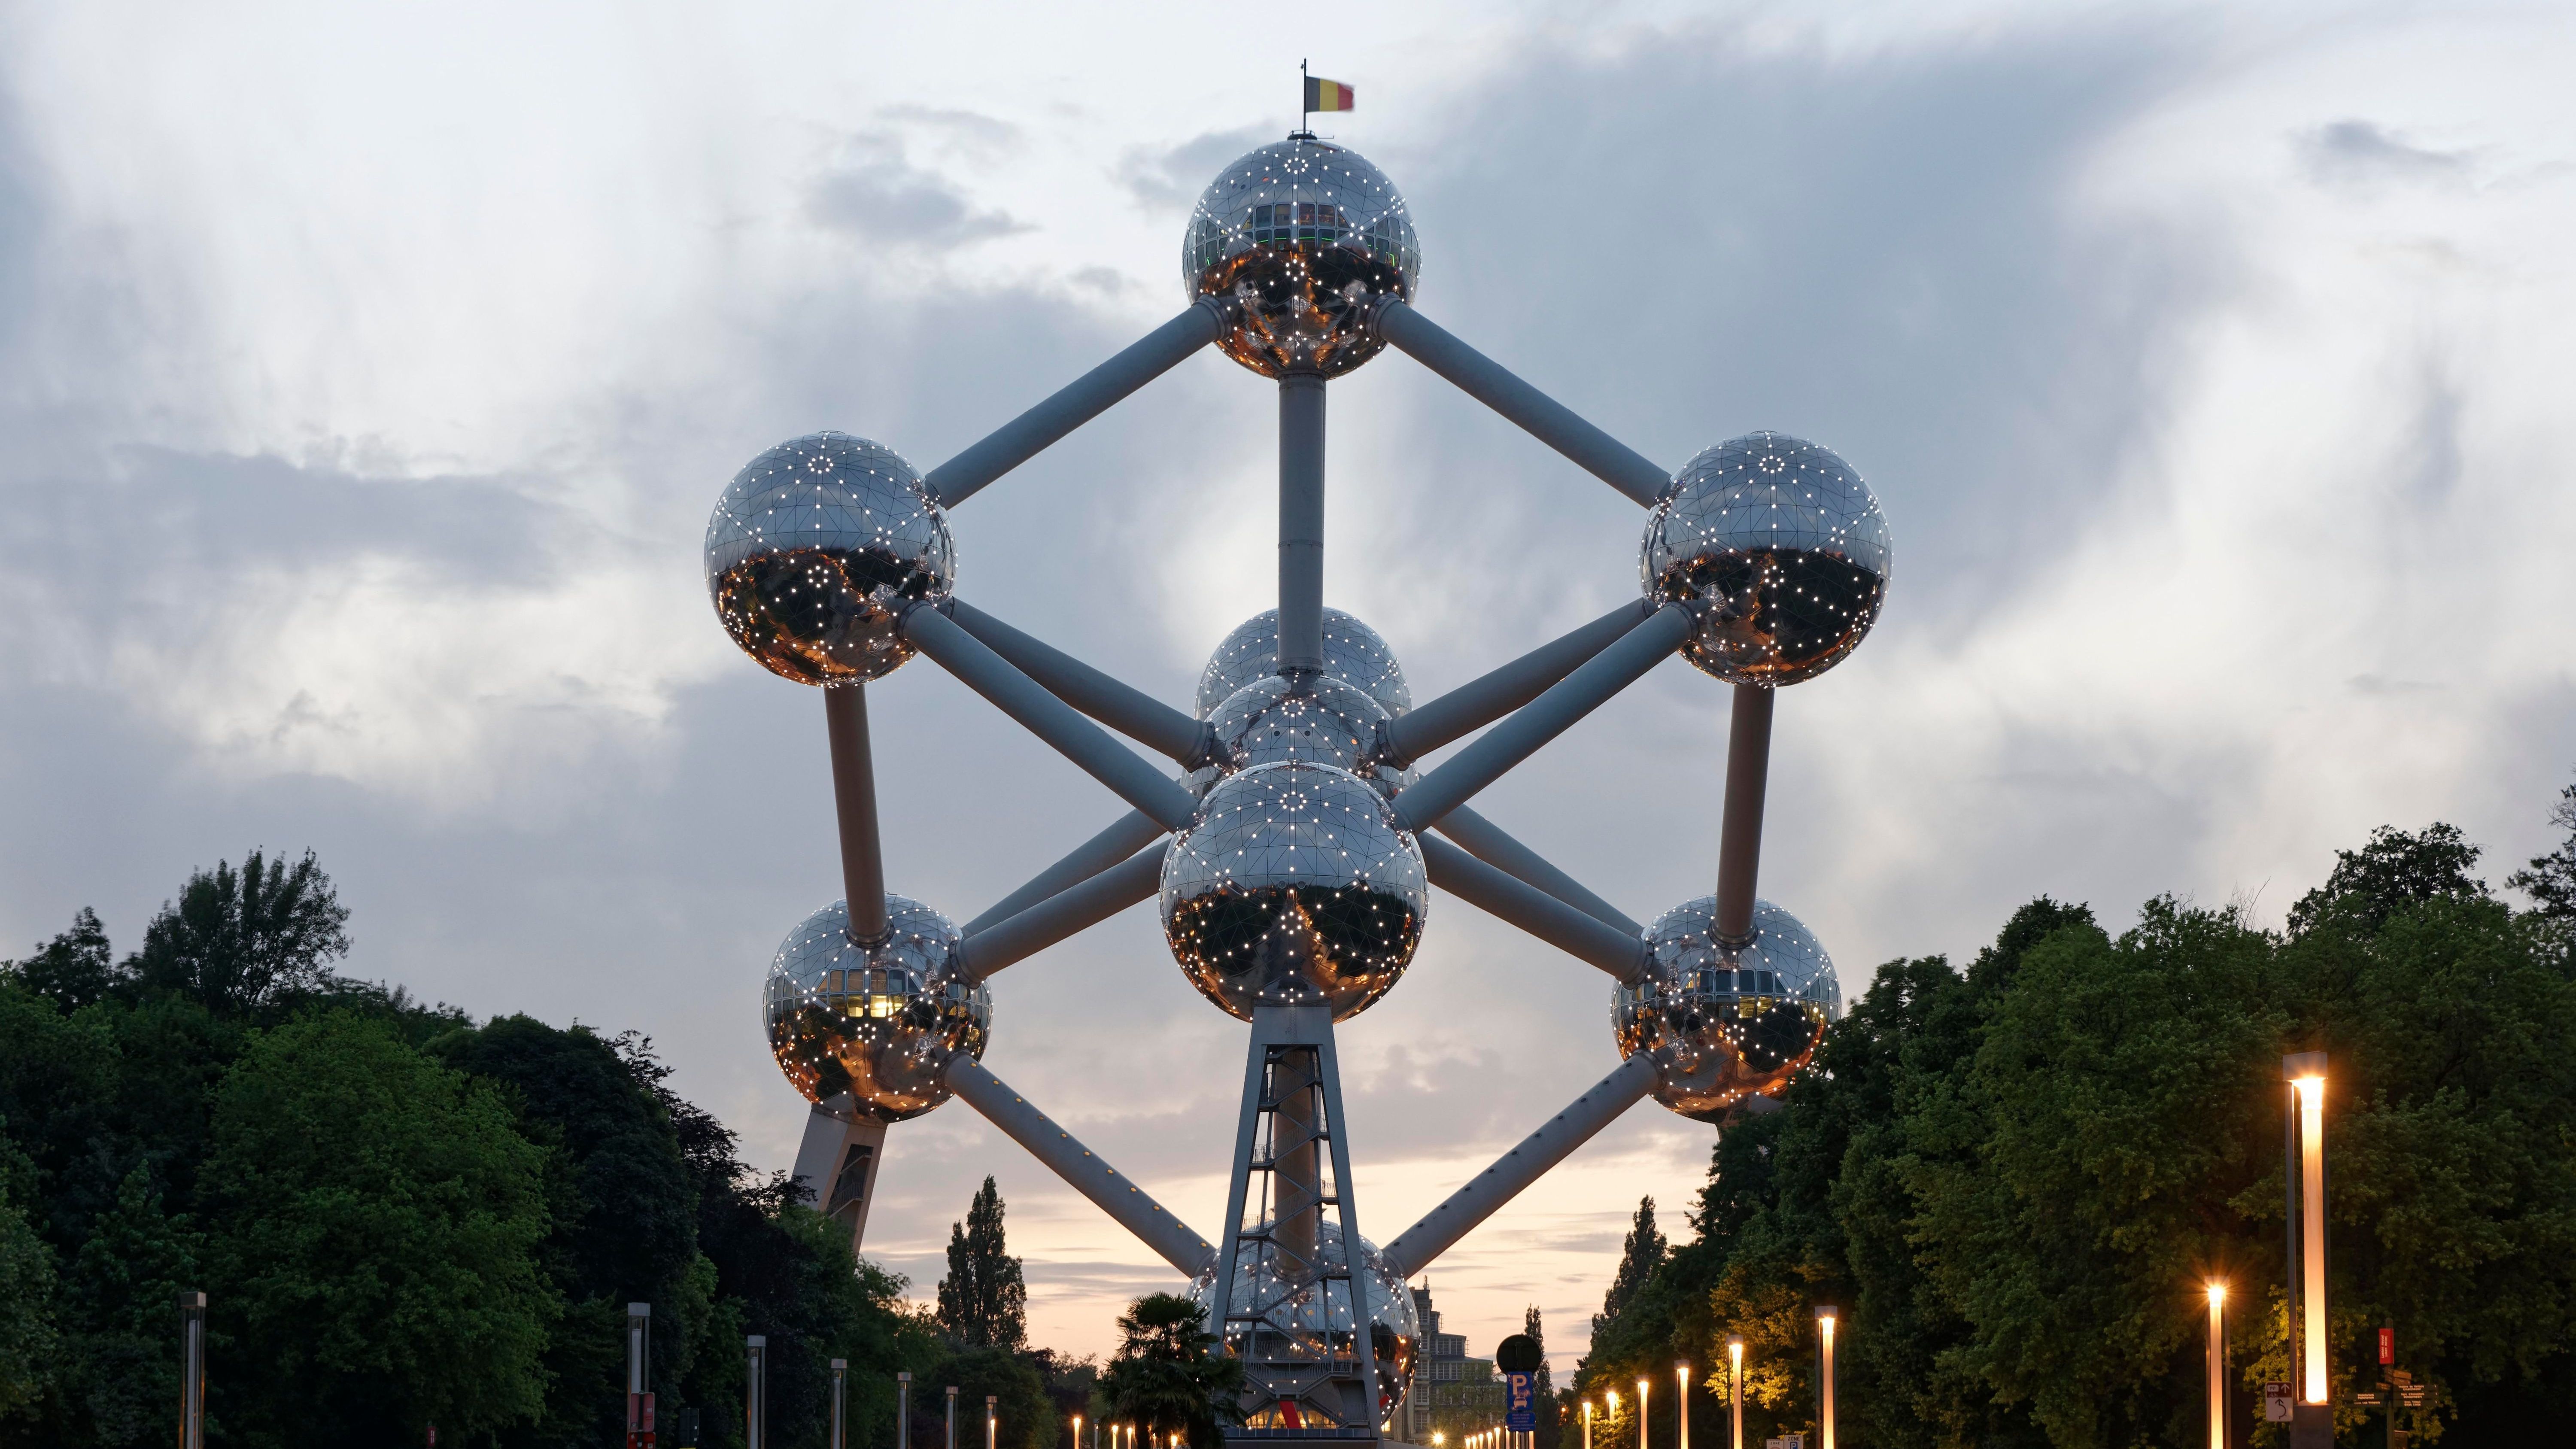 Das Atomium, errichtet im Jahr 1958 in Brüssel für die Weltausstellung Expo 58, ist ein Bauwerk von 102 Metern Höhe. Entworfen wurde es von Ingenieur André Waterkeyn und den Architekten André und Jean Polak. Es basiert auf einer 165-milliardenfachen Vergrößerung der kristallinen Elementarzelle des Eisens. Dieser ikonische Bau ist bis 2075 urheberrechtlich geschützt.